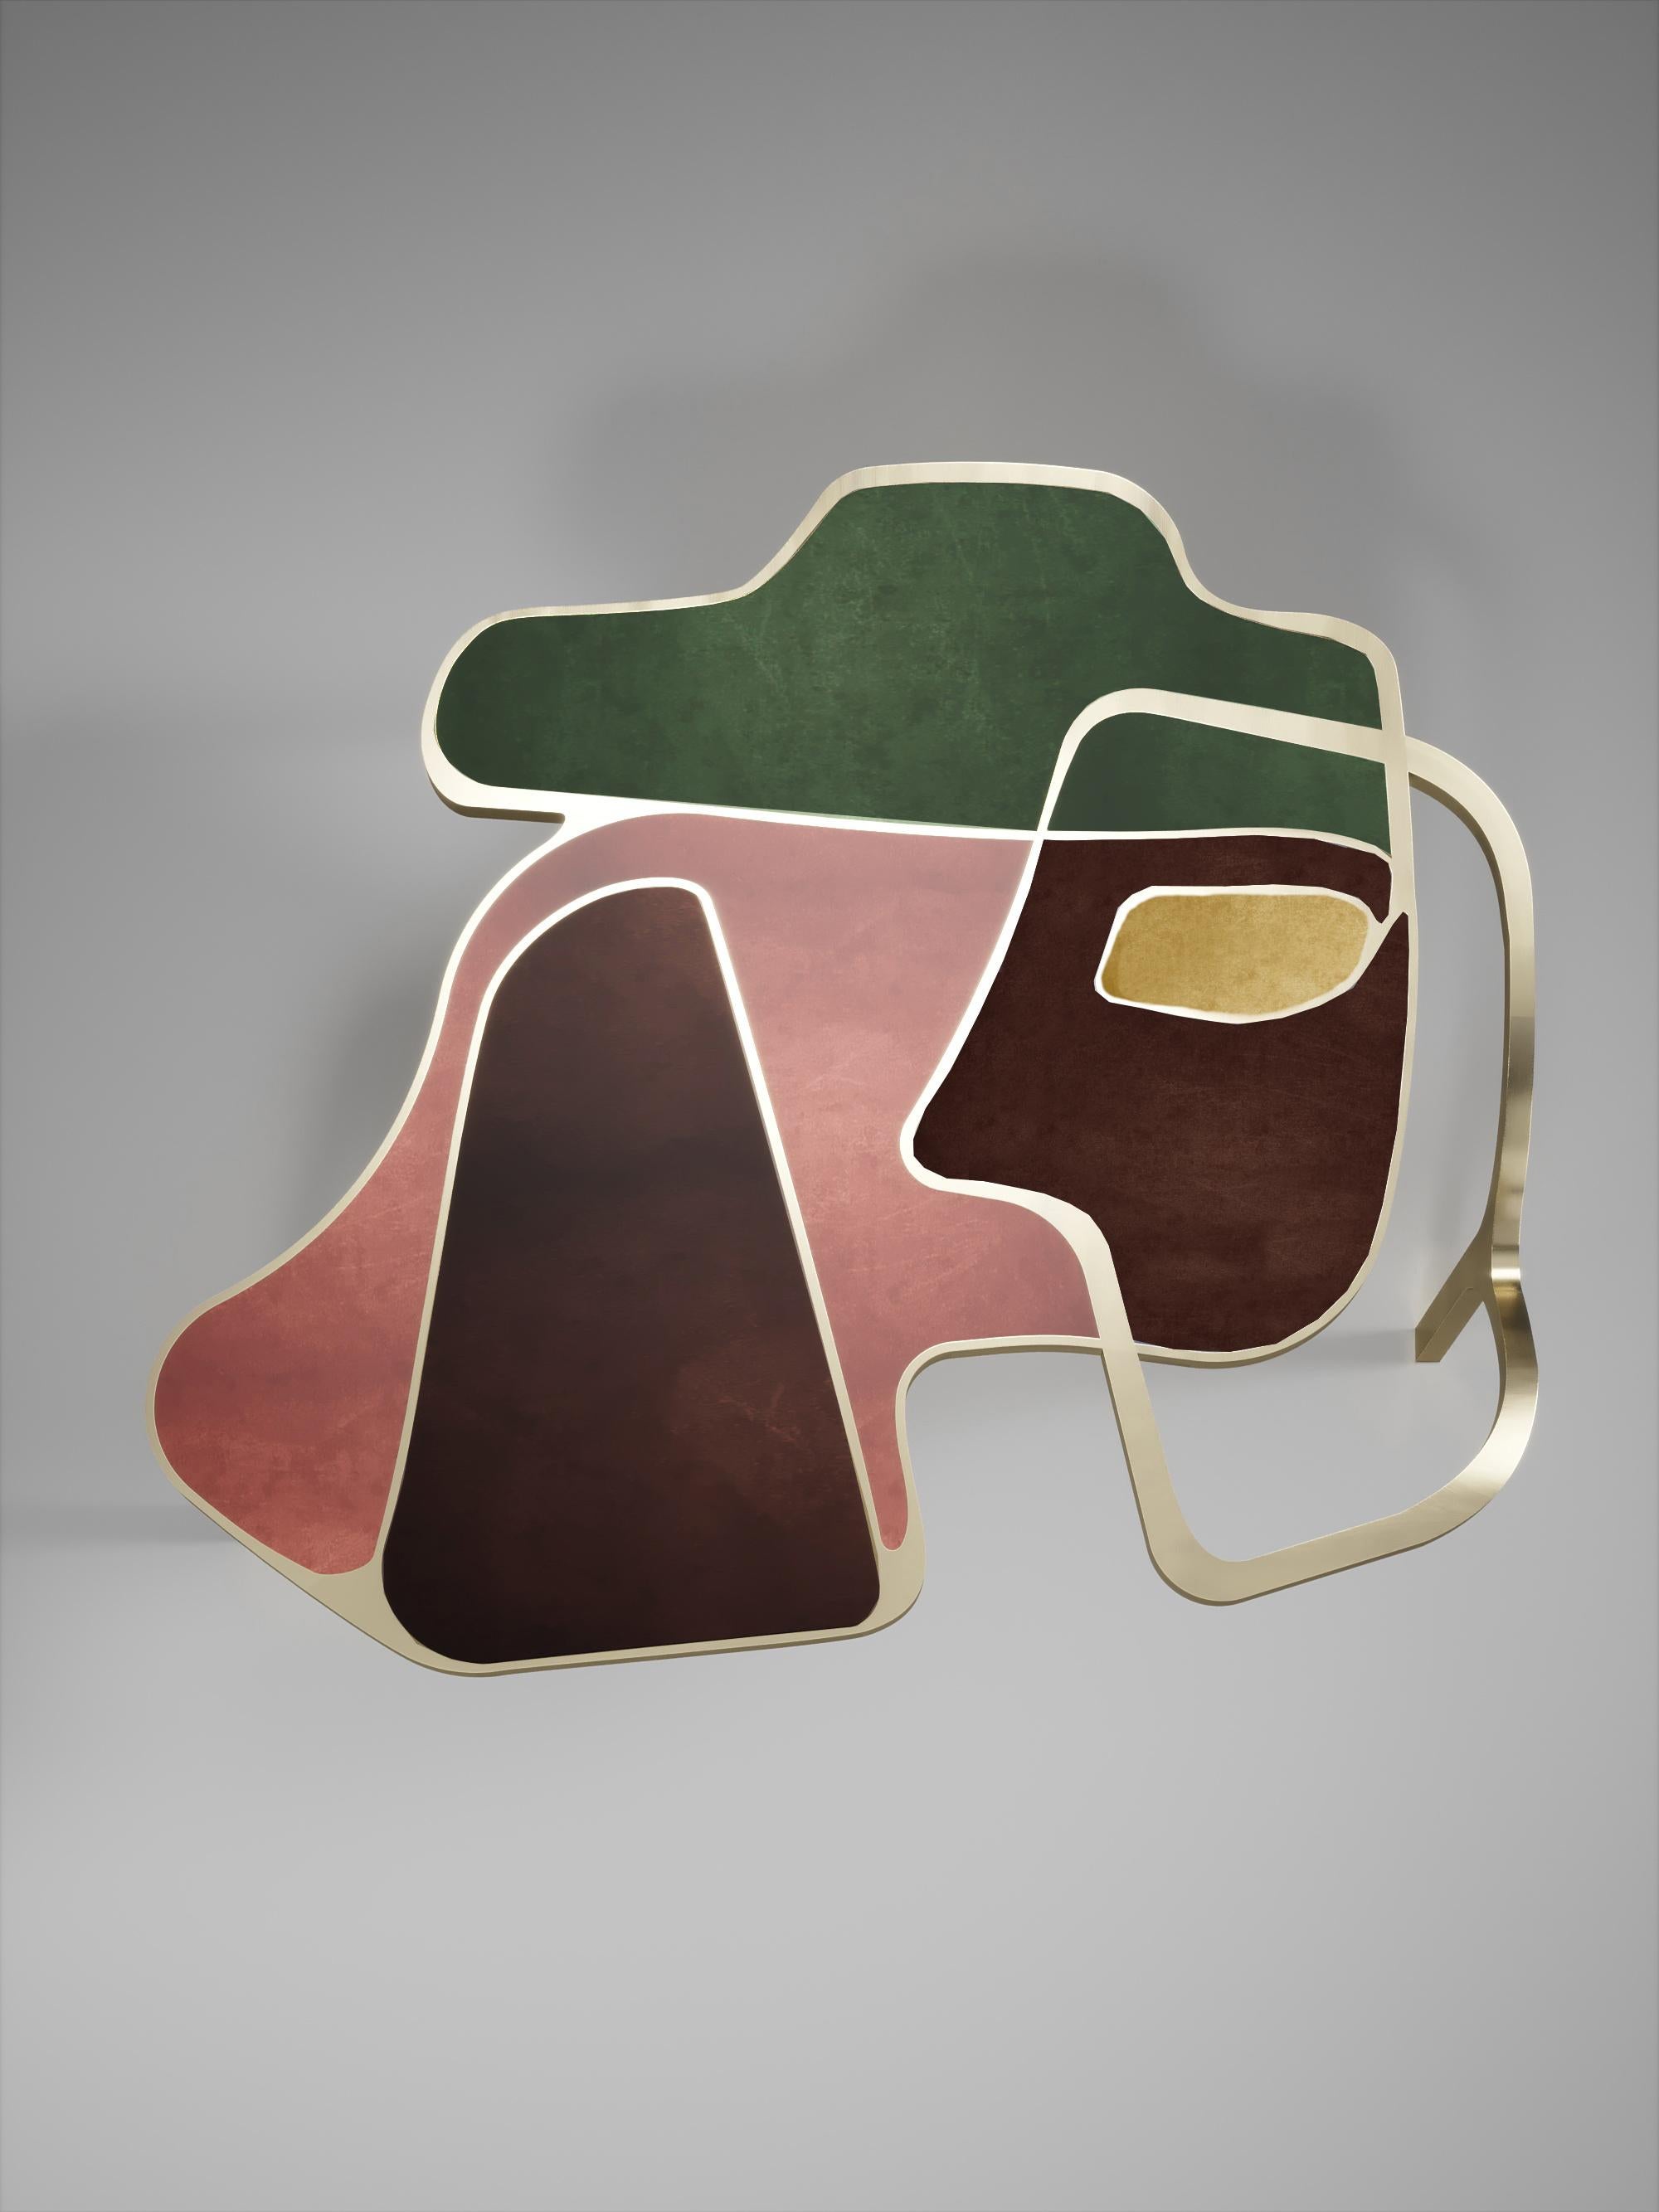 La table basse Cocteau de R&Y Augousti est une pièce unique en son genre. Cette pièce sculpturale et éthérée comporte des formes abstraites et des figures que l'on peut interpréter de différentes manières. Les inserts en laiton bronze-patiné dans la